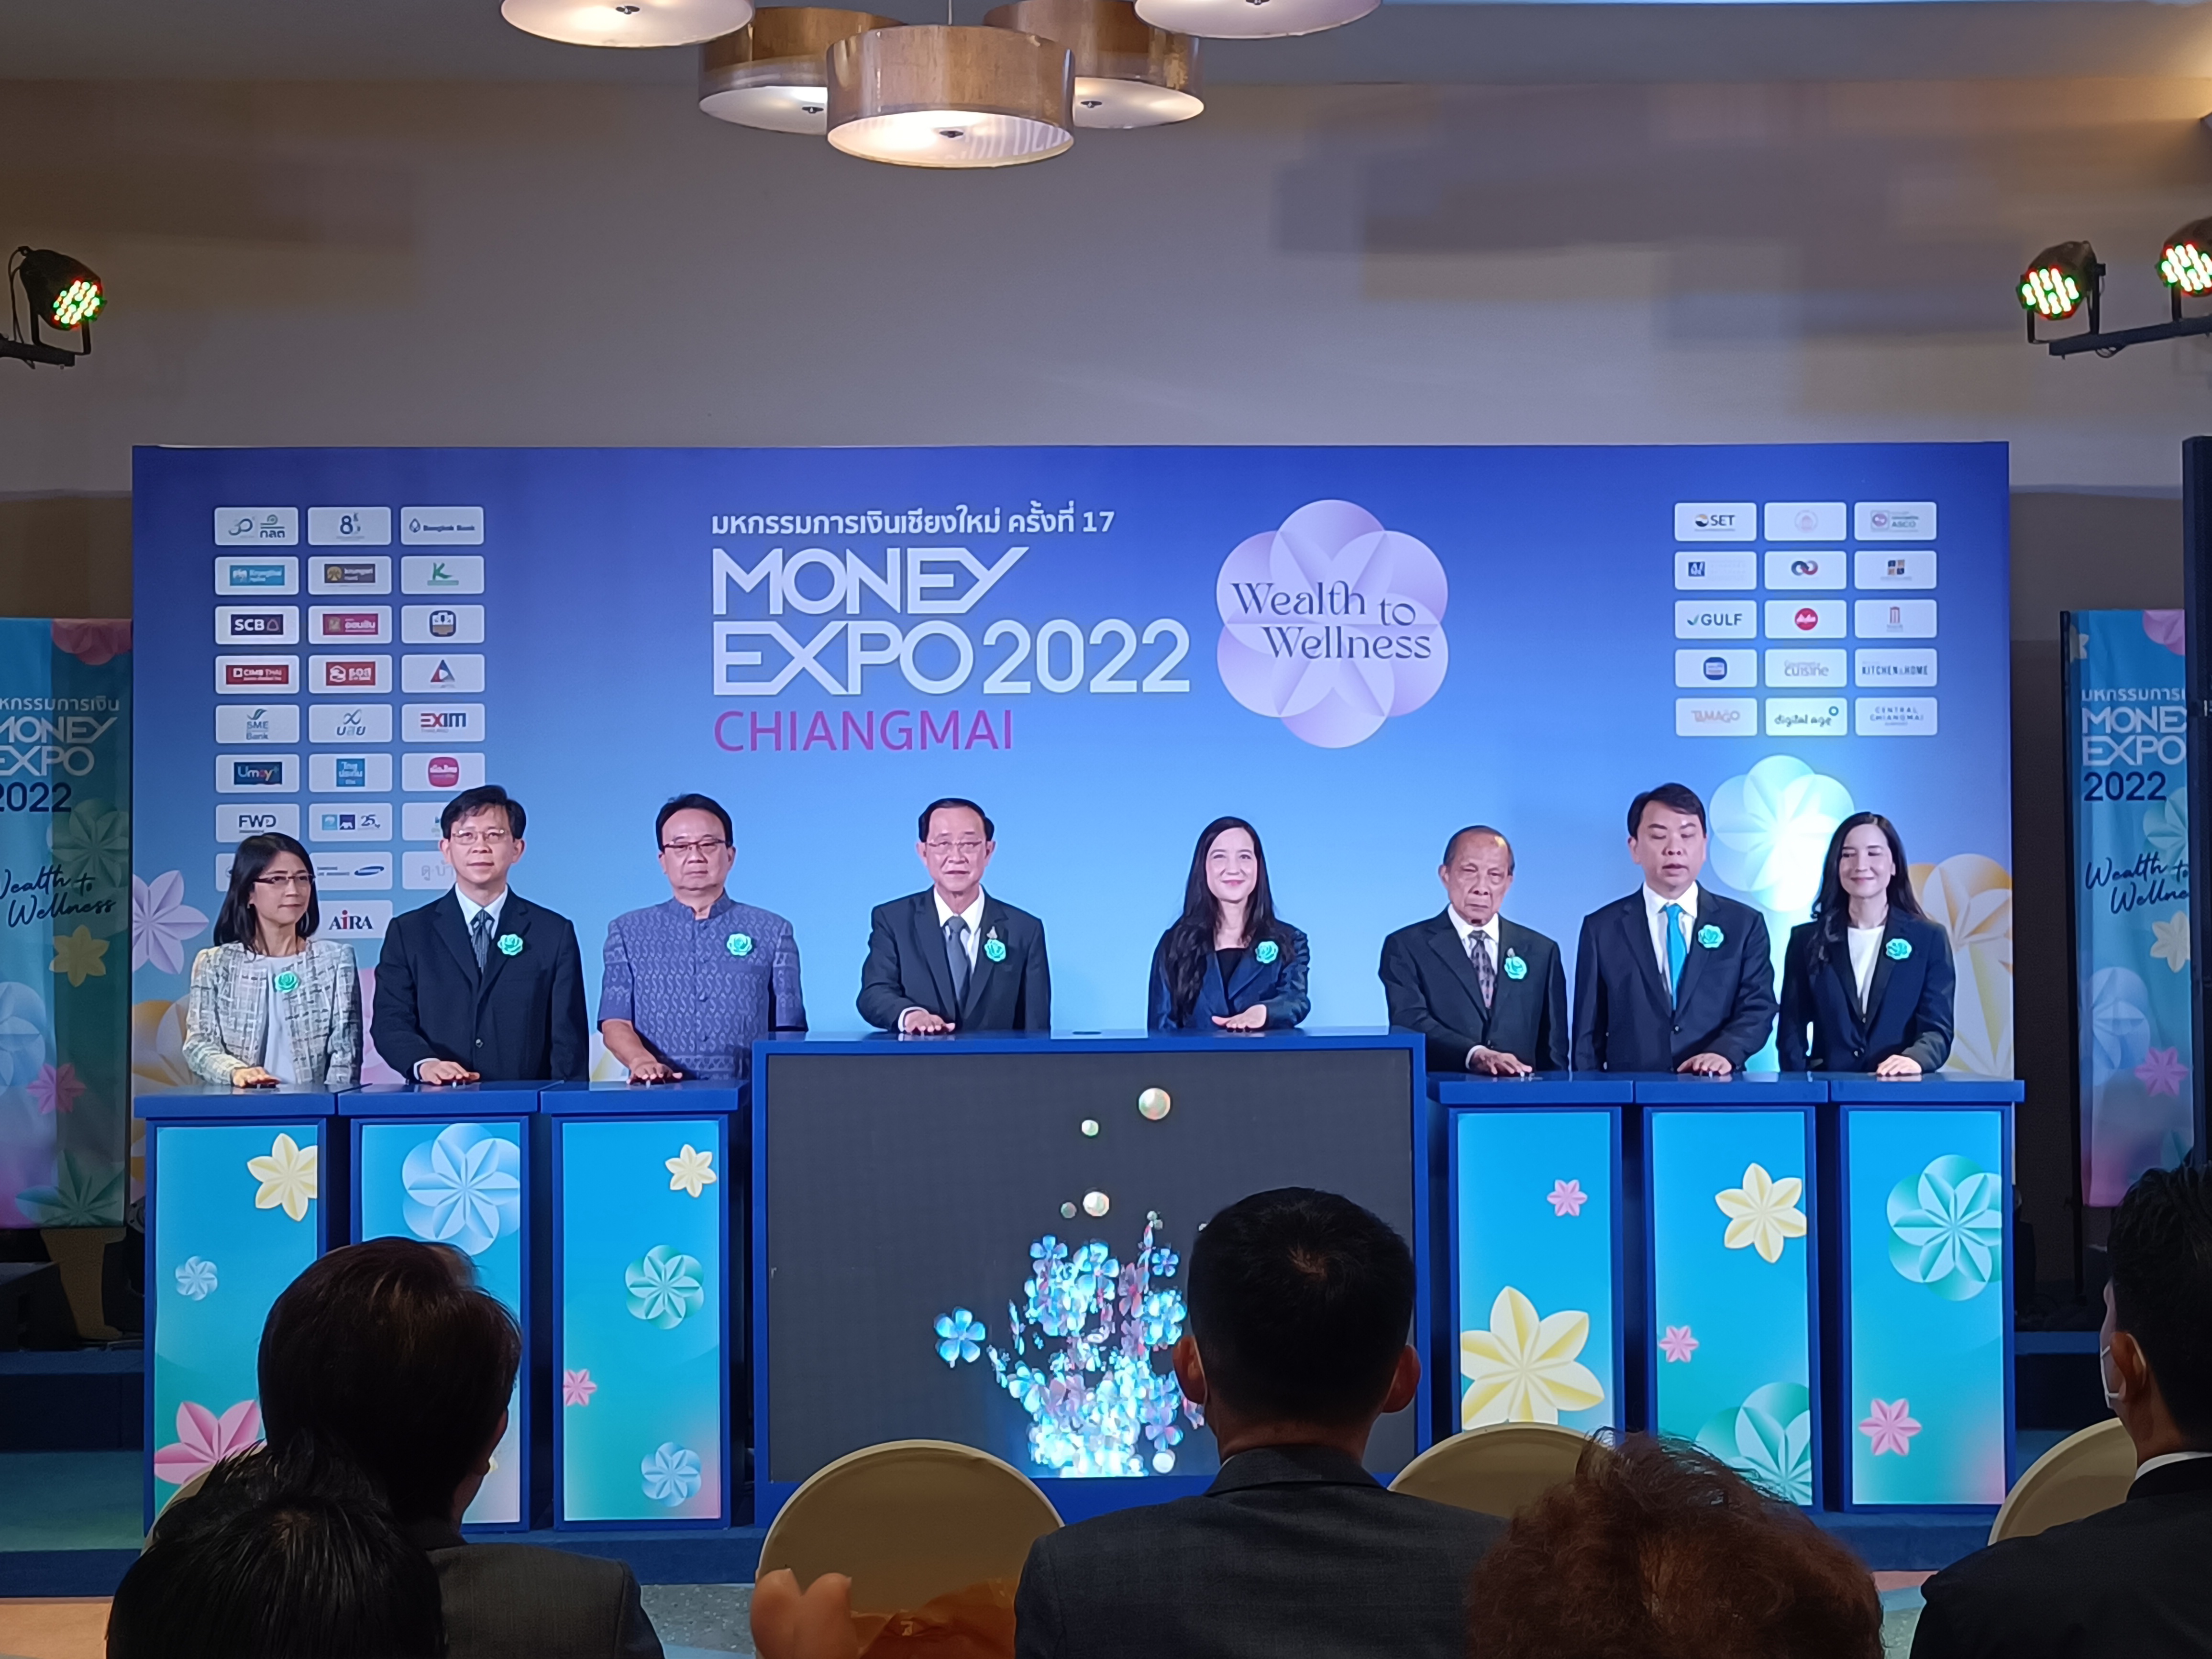 เชียงใหม่ - มหกรรมการเงินเชียงใหม่ ครั้งที่ 17 Money Expo Chiangmai 2022 เปิดคึกคัก แบงก์-ประกัน เสิร์ฟโปรโมชั่นแรงส่งท้ายปี